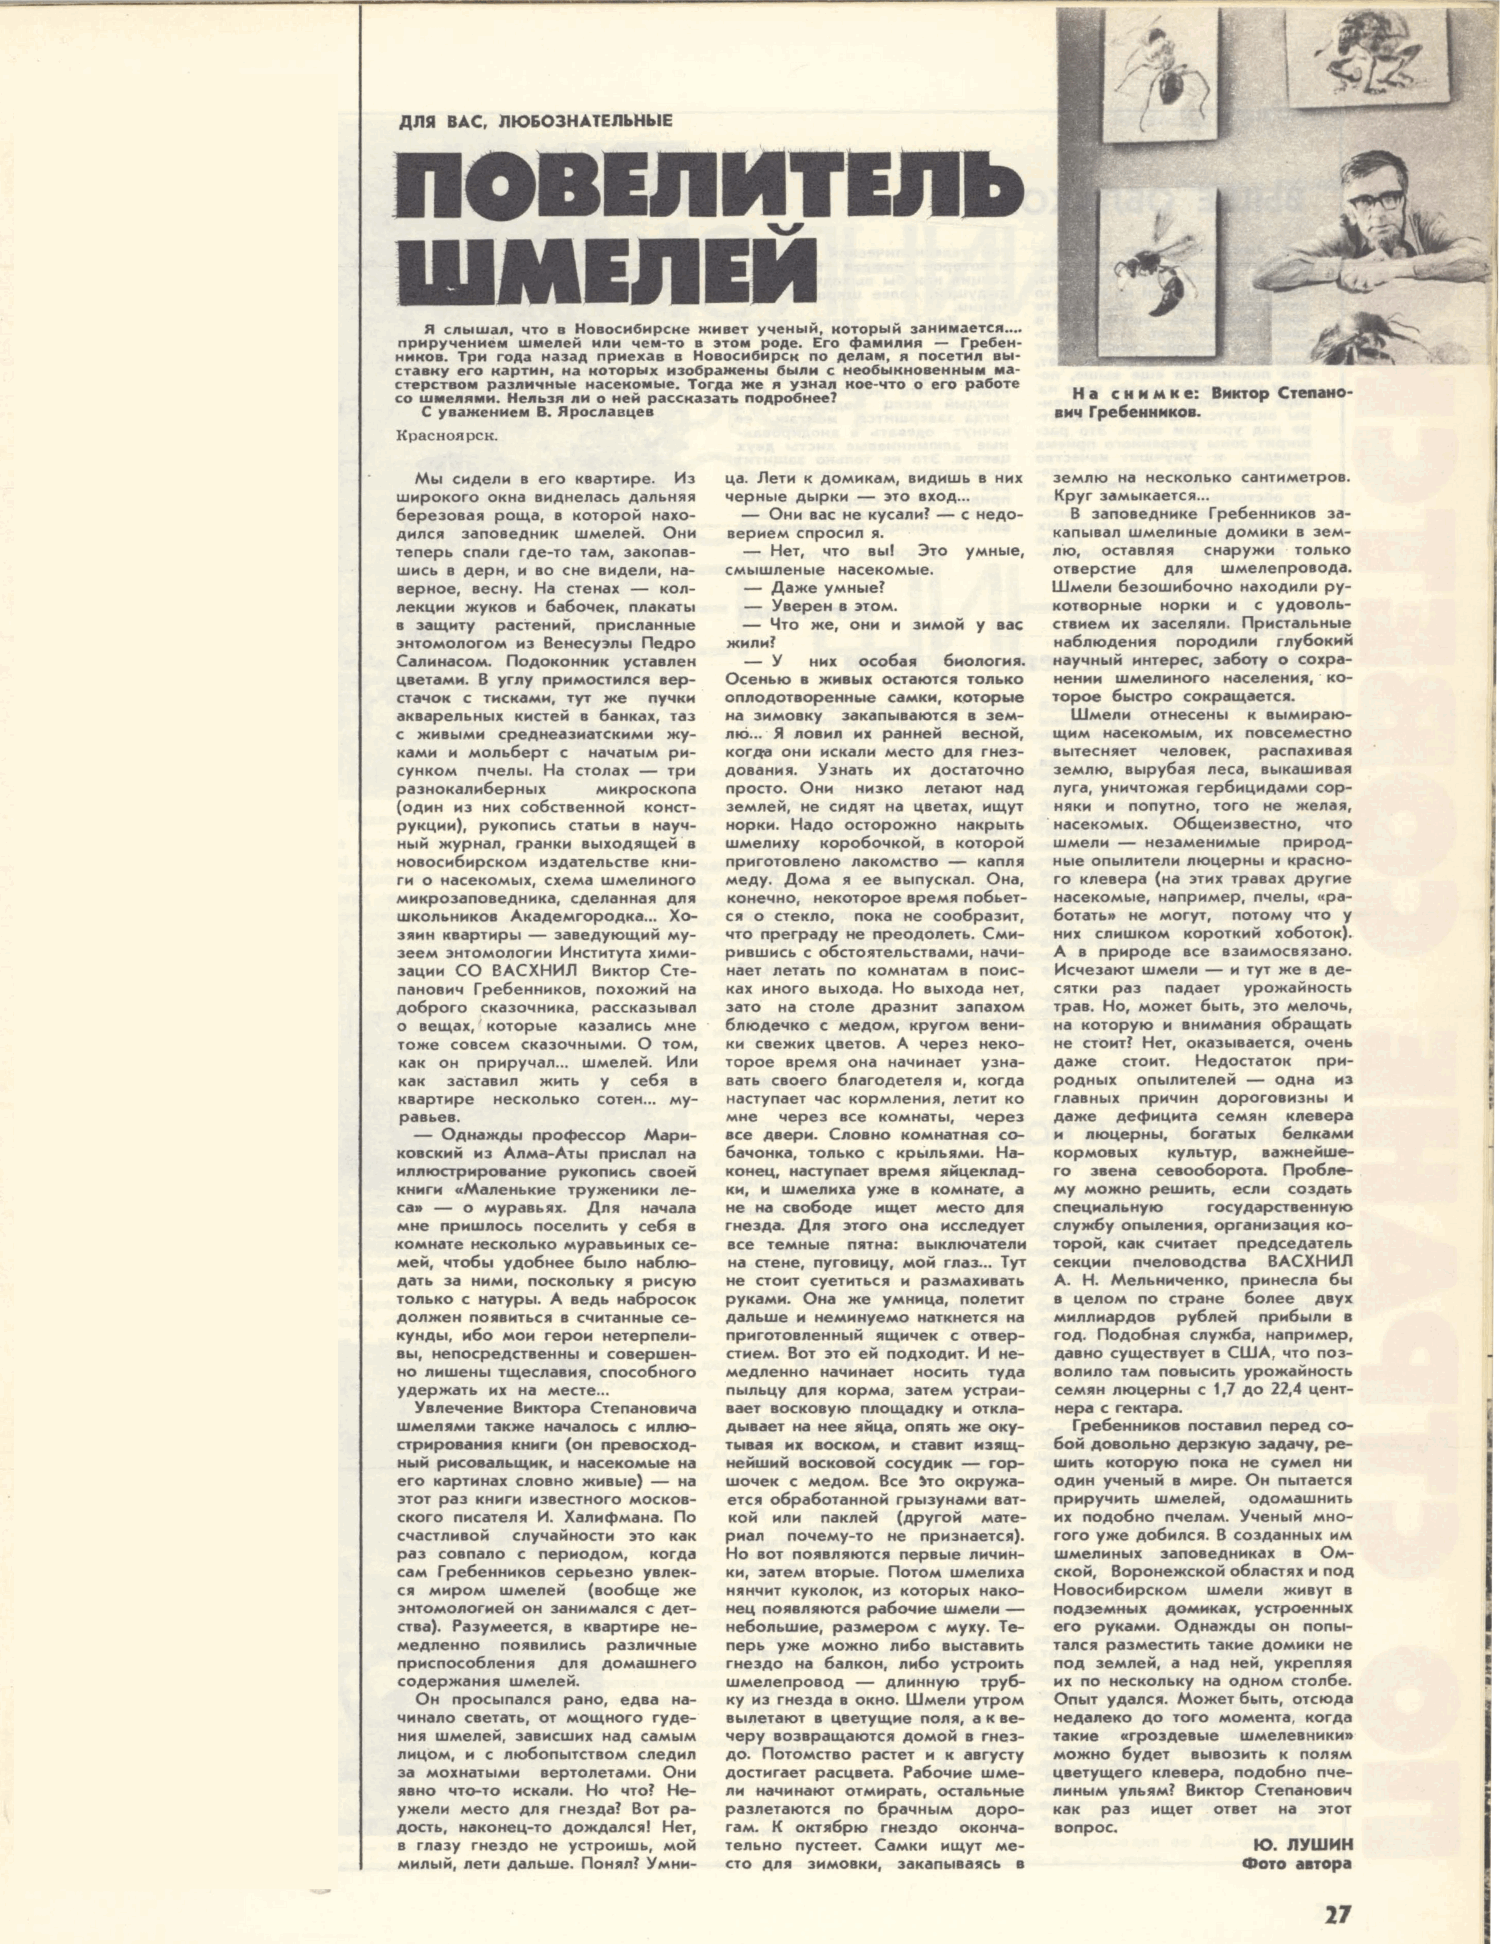 Повелитель шмелей. Ю. Лушин. Огонёк, 23.06.1979, №26, с.27. Фотокопия